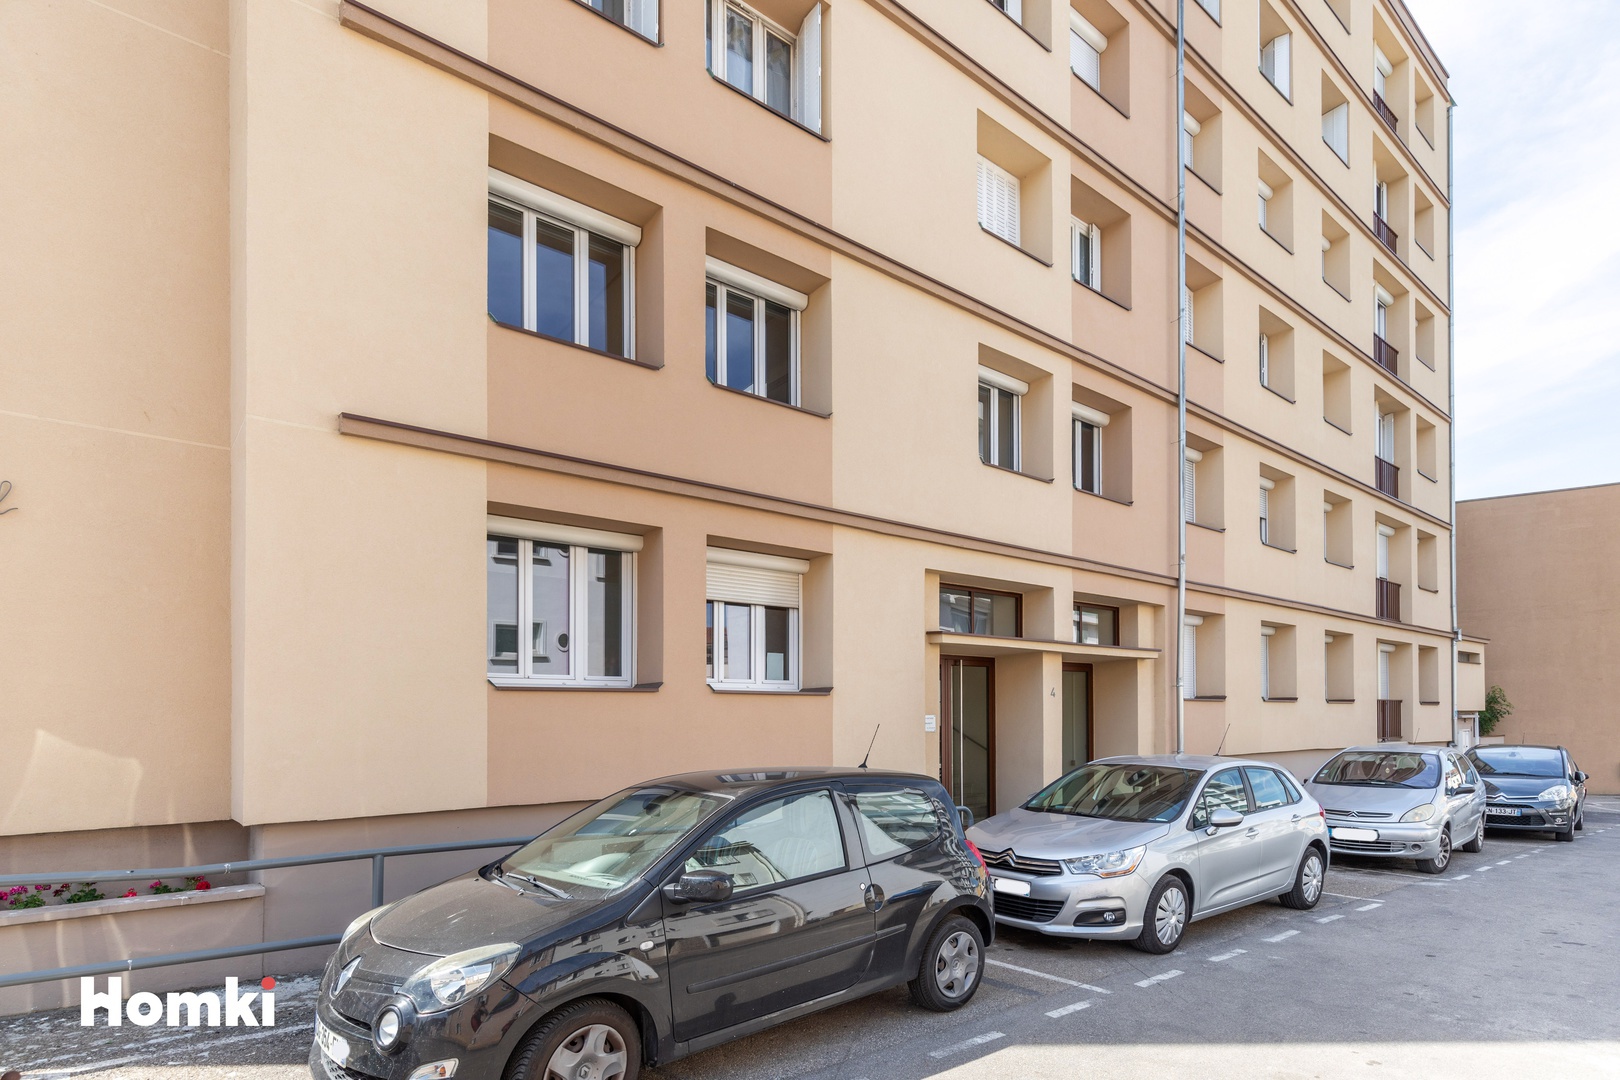 Homki - Vente Appartement  de 36.0 m² à Bourg-en-Bresse 01000